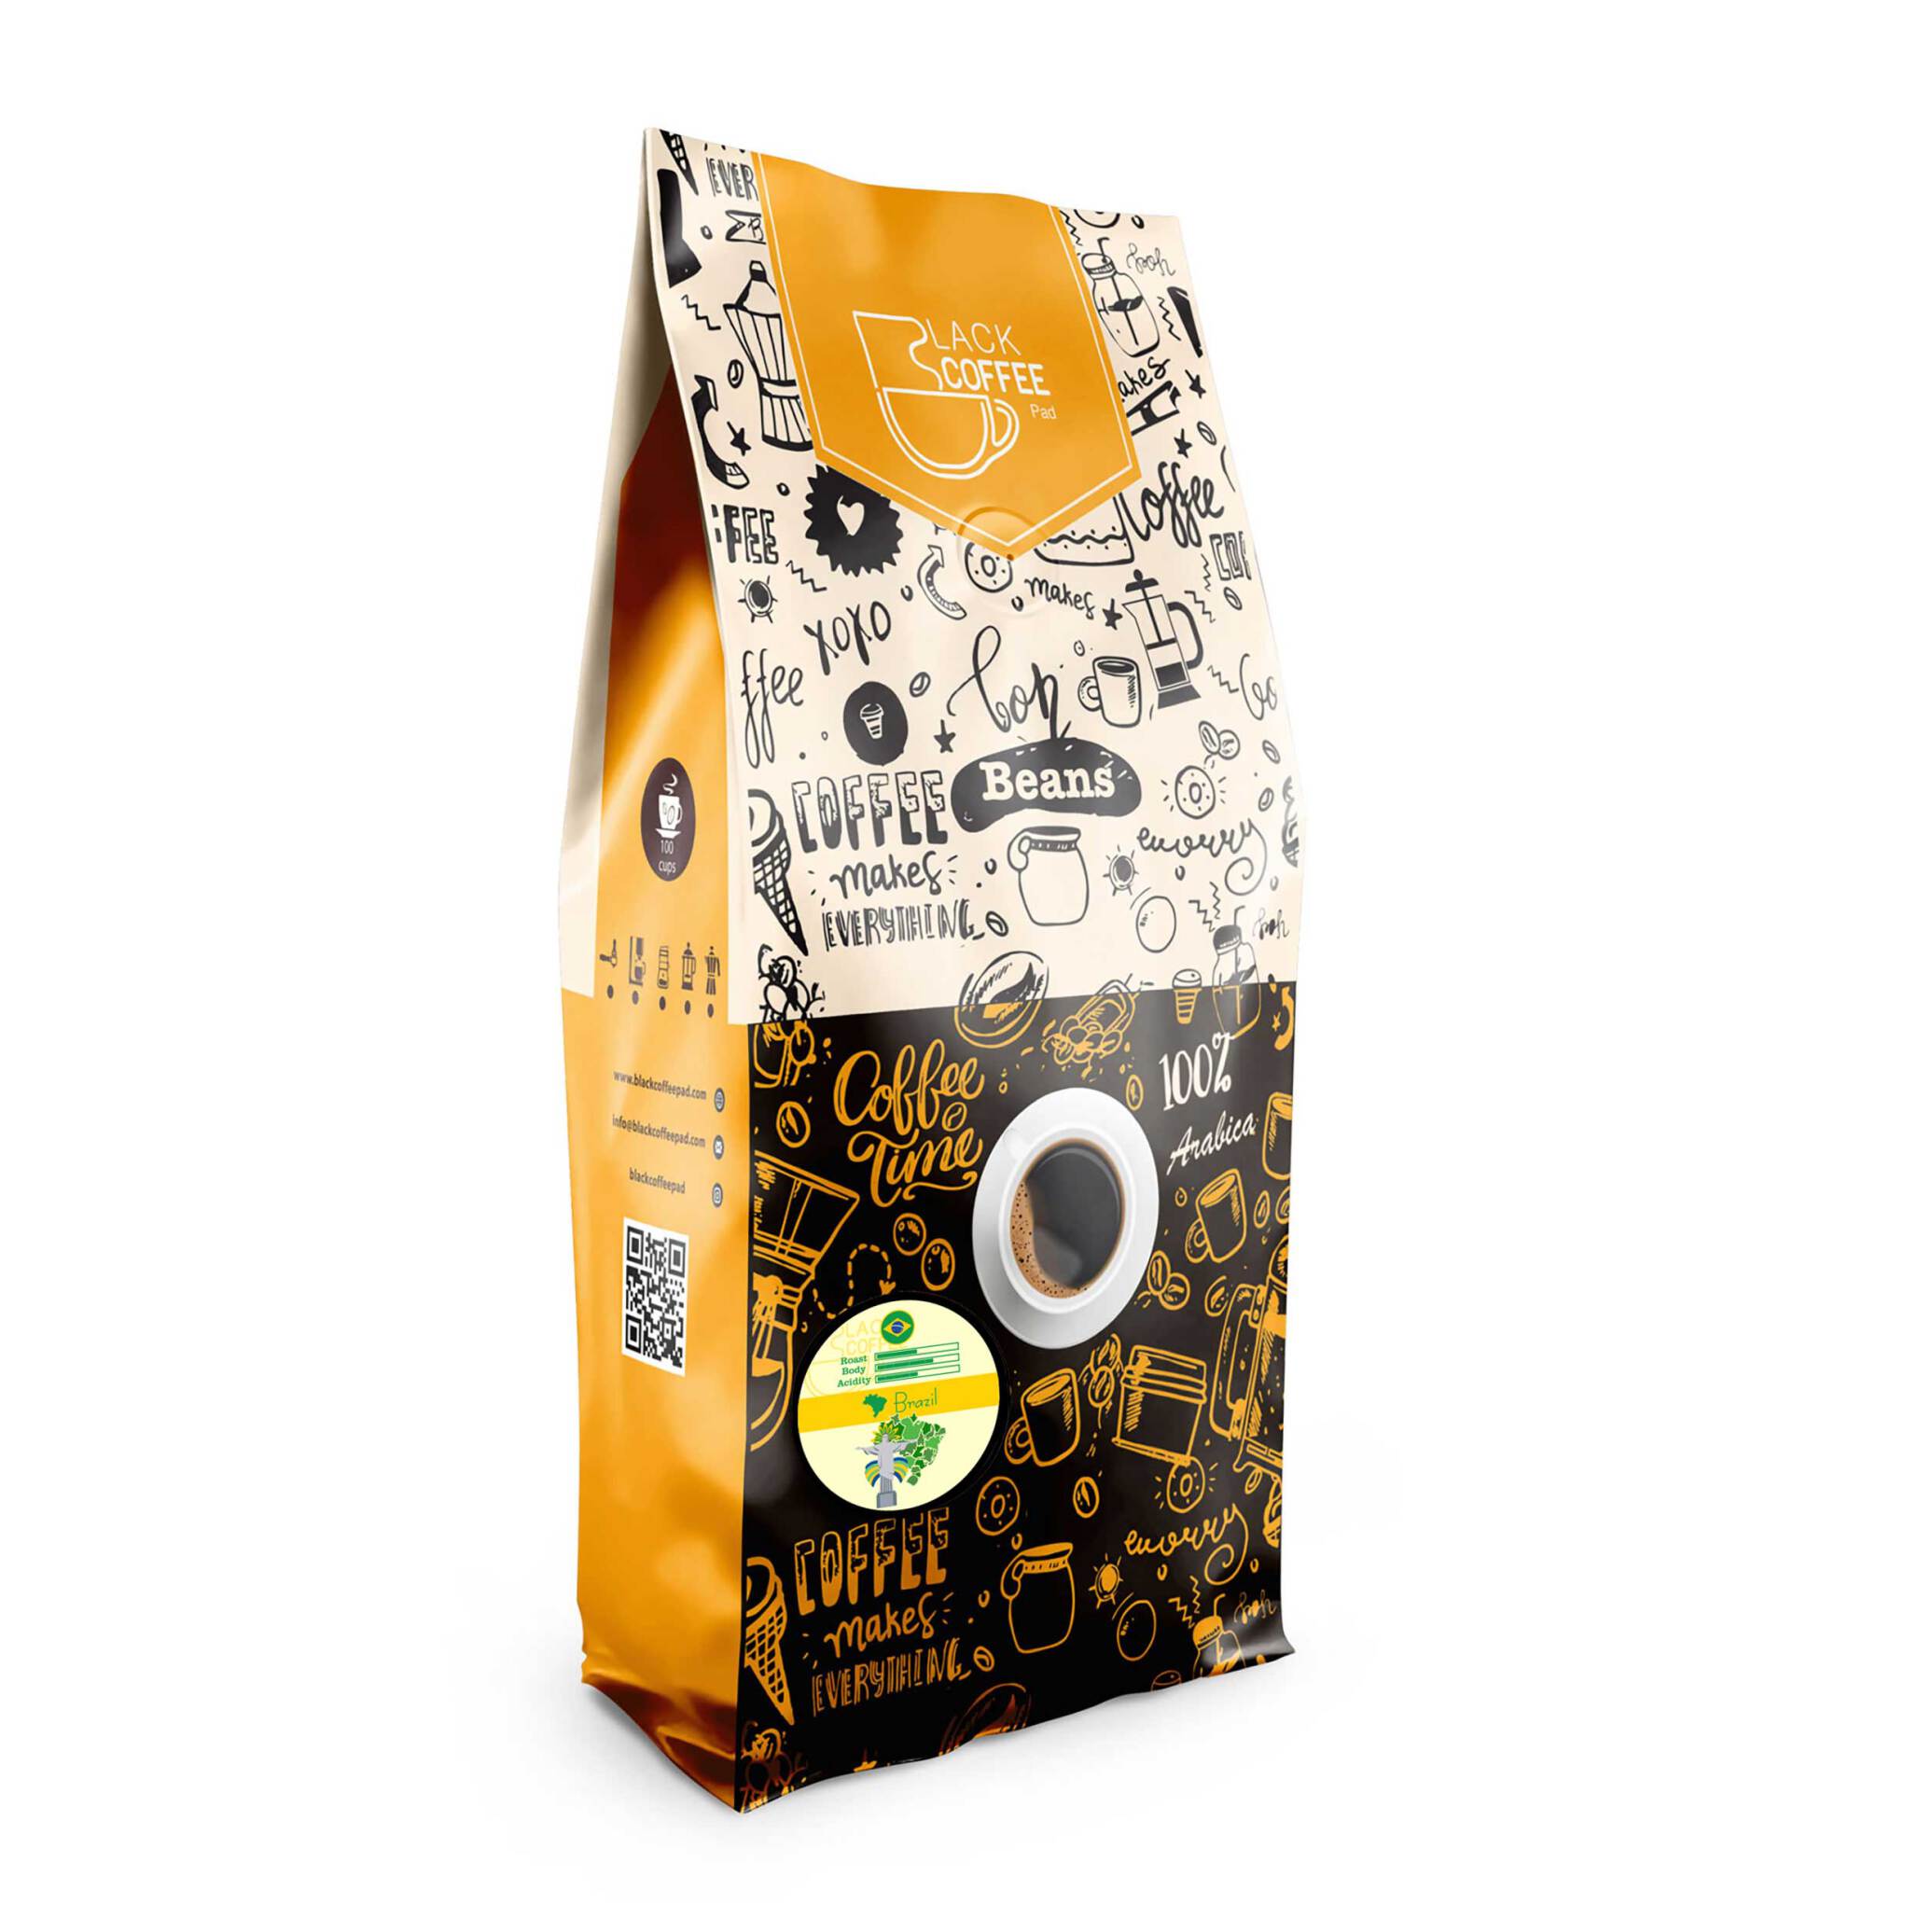  دانه قهوه برزیل - Brasil coffee beans - یک کیلویی | دانه قهوه | خرید دانه | بلک کافی 